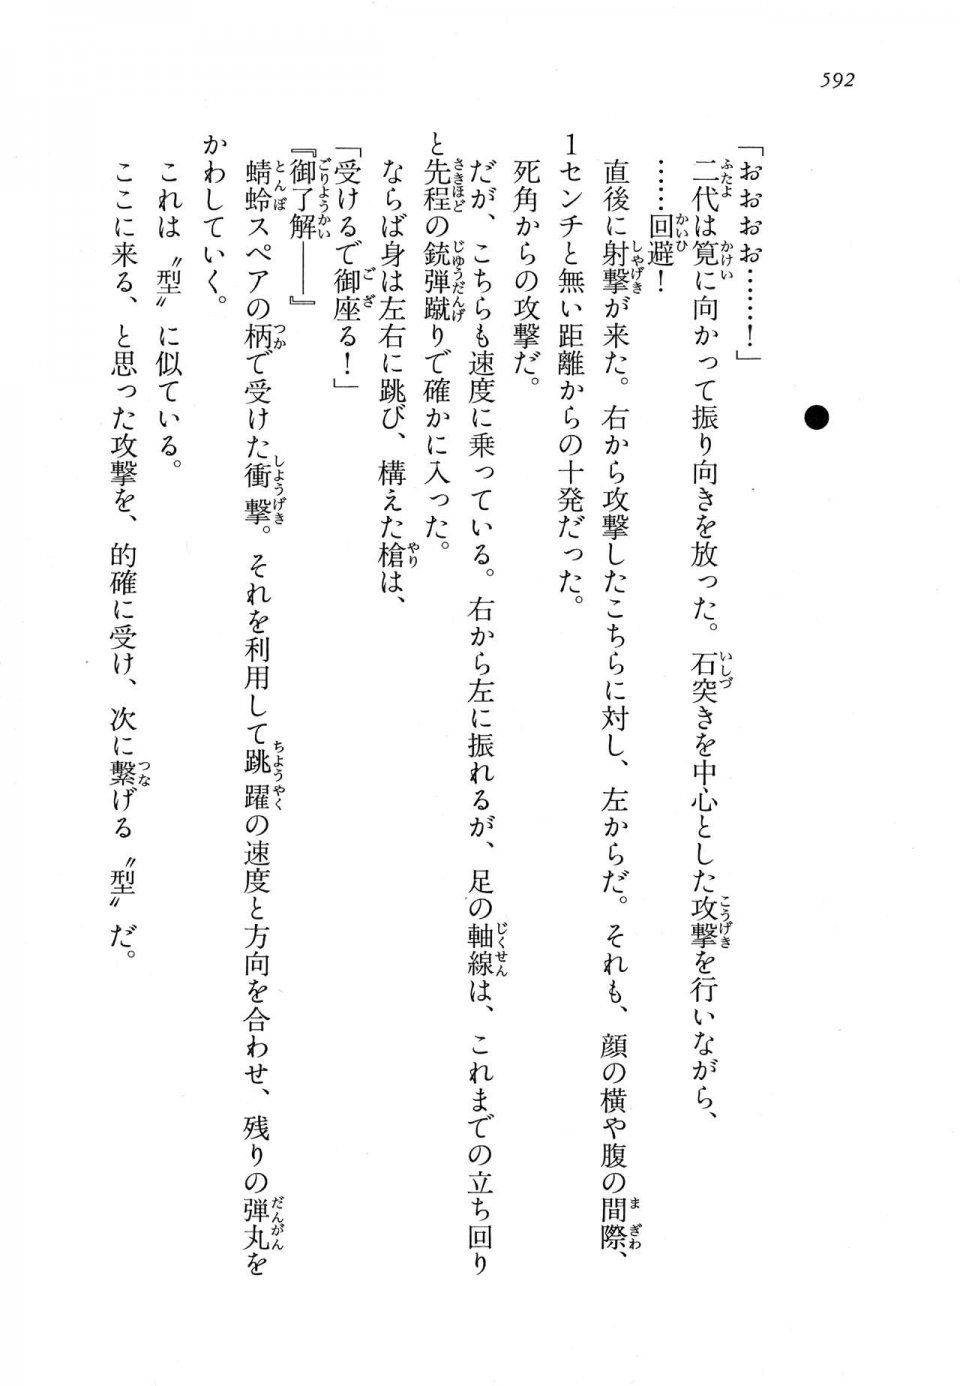 Kyoukai Senjou no Horizon LN Vol 11(5A) - Photo #592